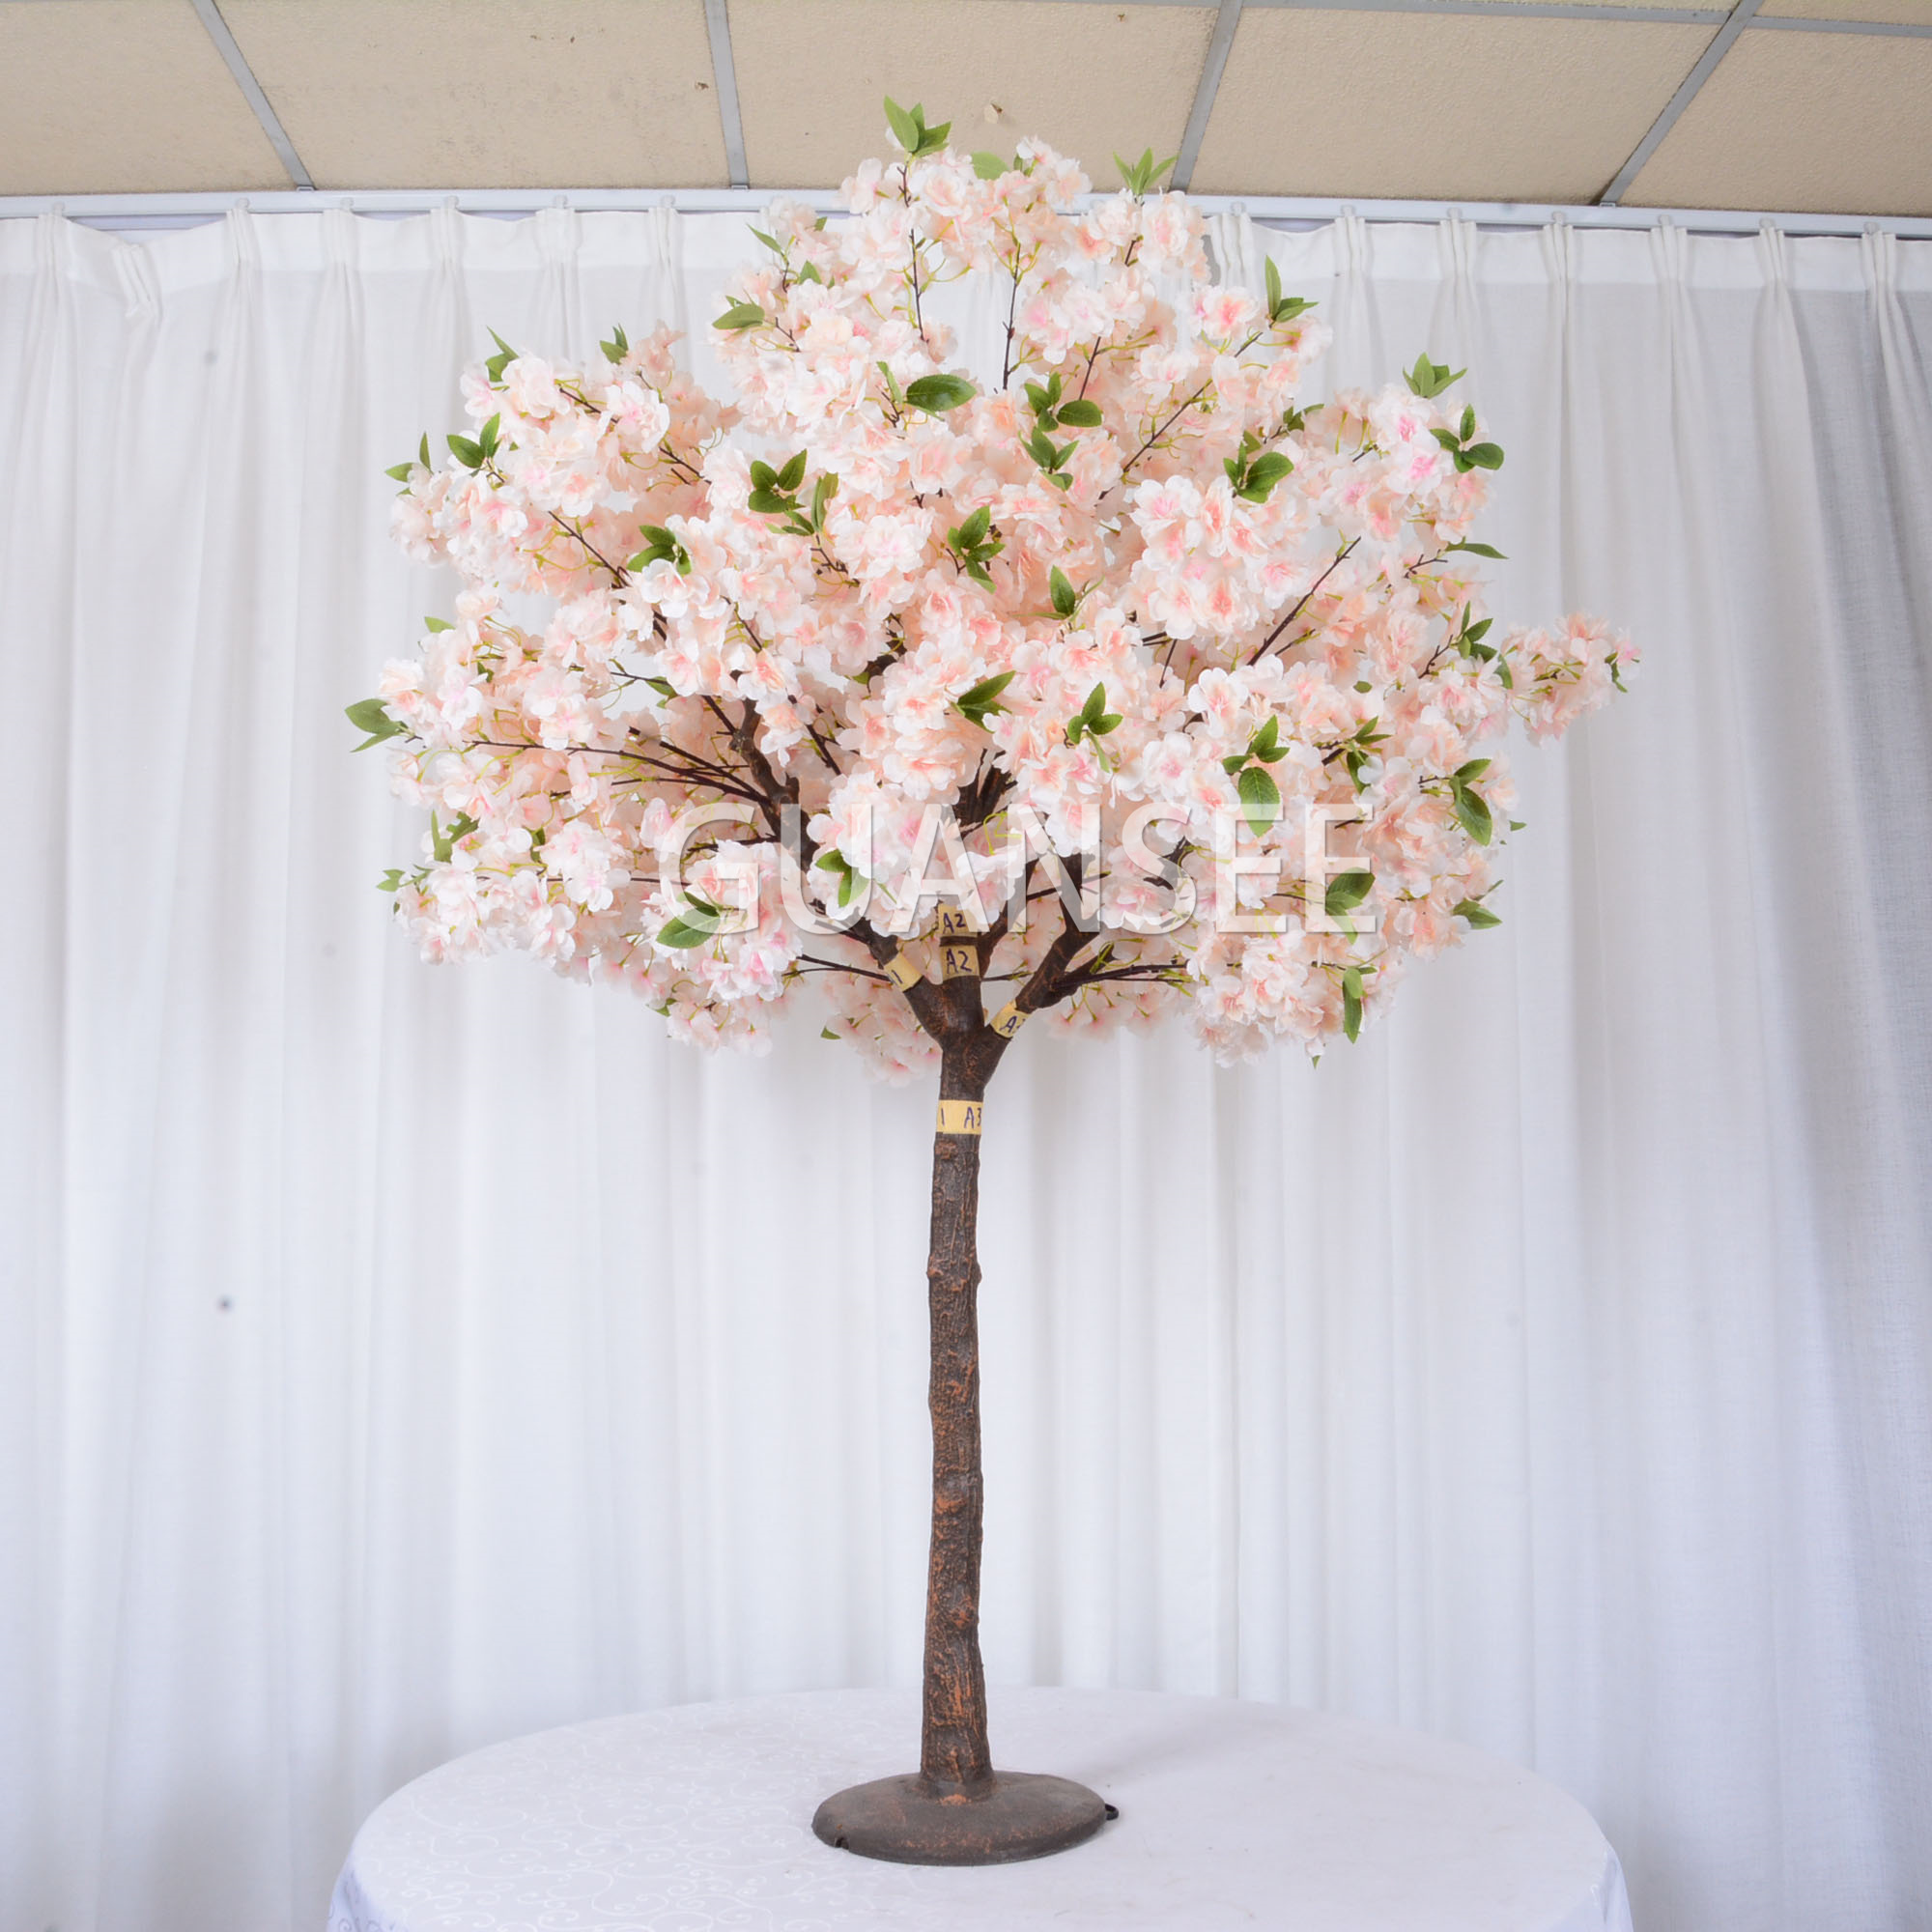  5 kaki sampanye meja pernikahan pusat meja pernikahan pohon sakura buatan 